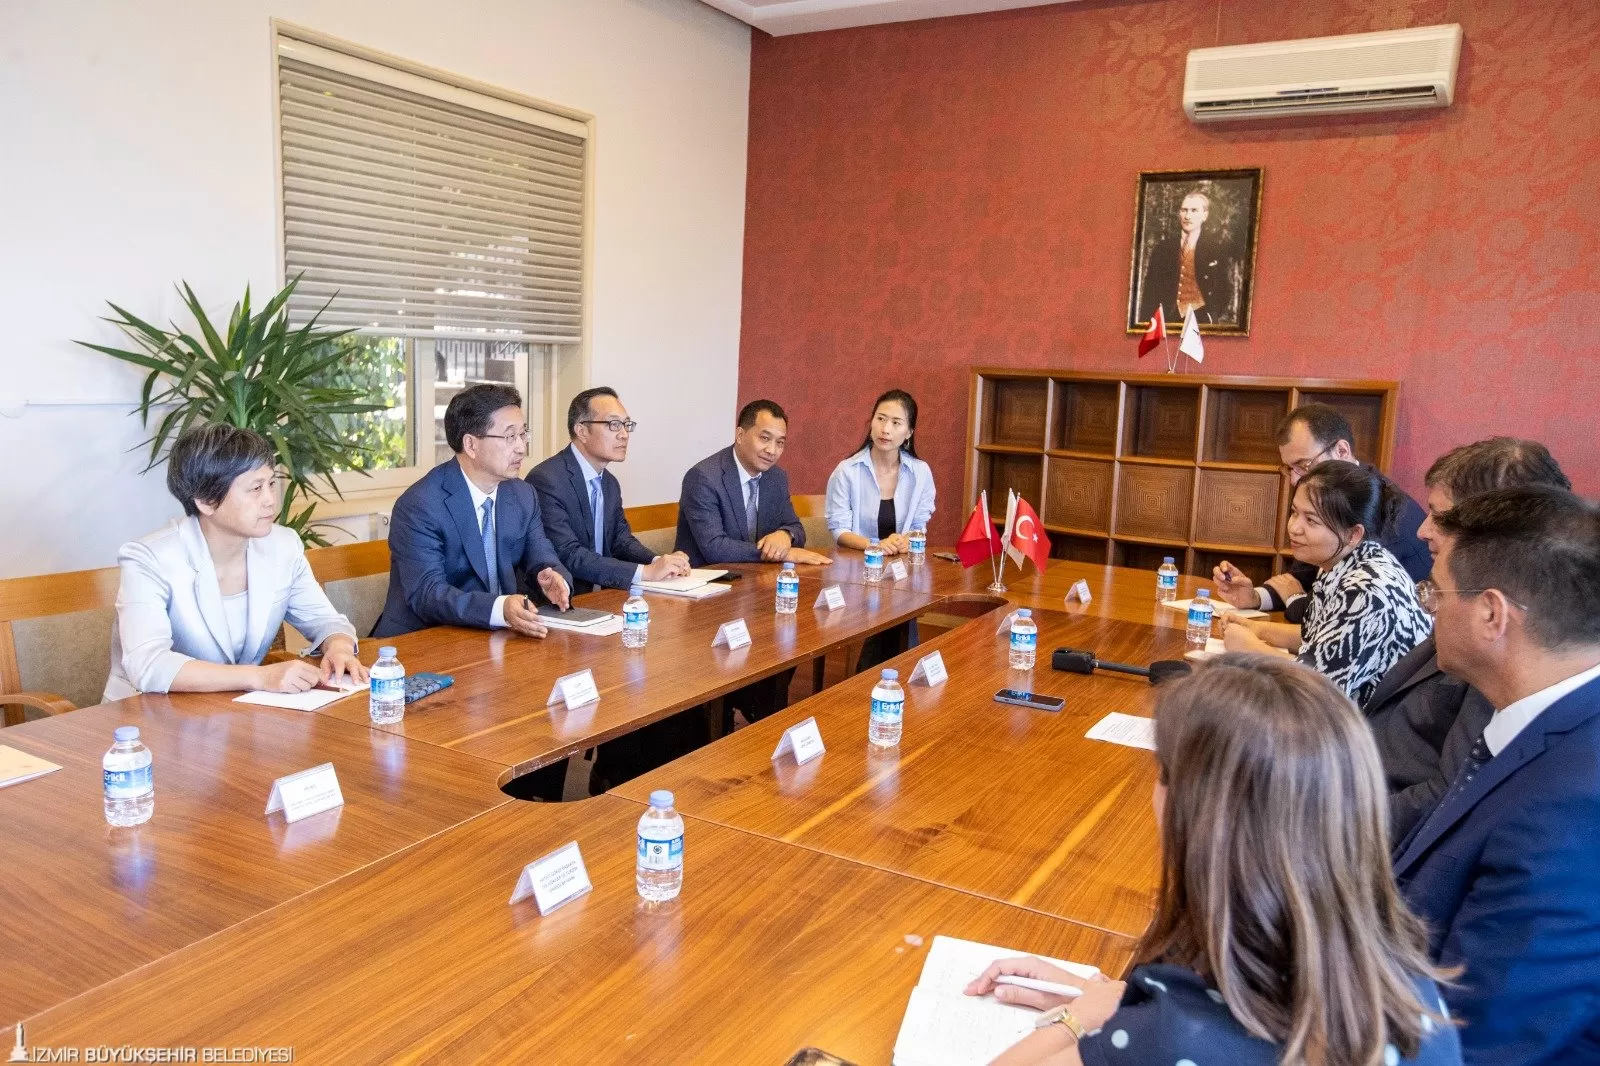 İzmir Büyükşehir Belediye Başkanı Dr. Cemil Tugay ve Çin Halk Cumhuriyeti Zhejiang İl Halk Kongresi Daimi Komitesi Başkan Yardımcısı Chen Jinbiao, ikili ilişkileri ve yatırım imkanlarını görüştü.